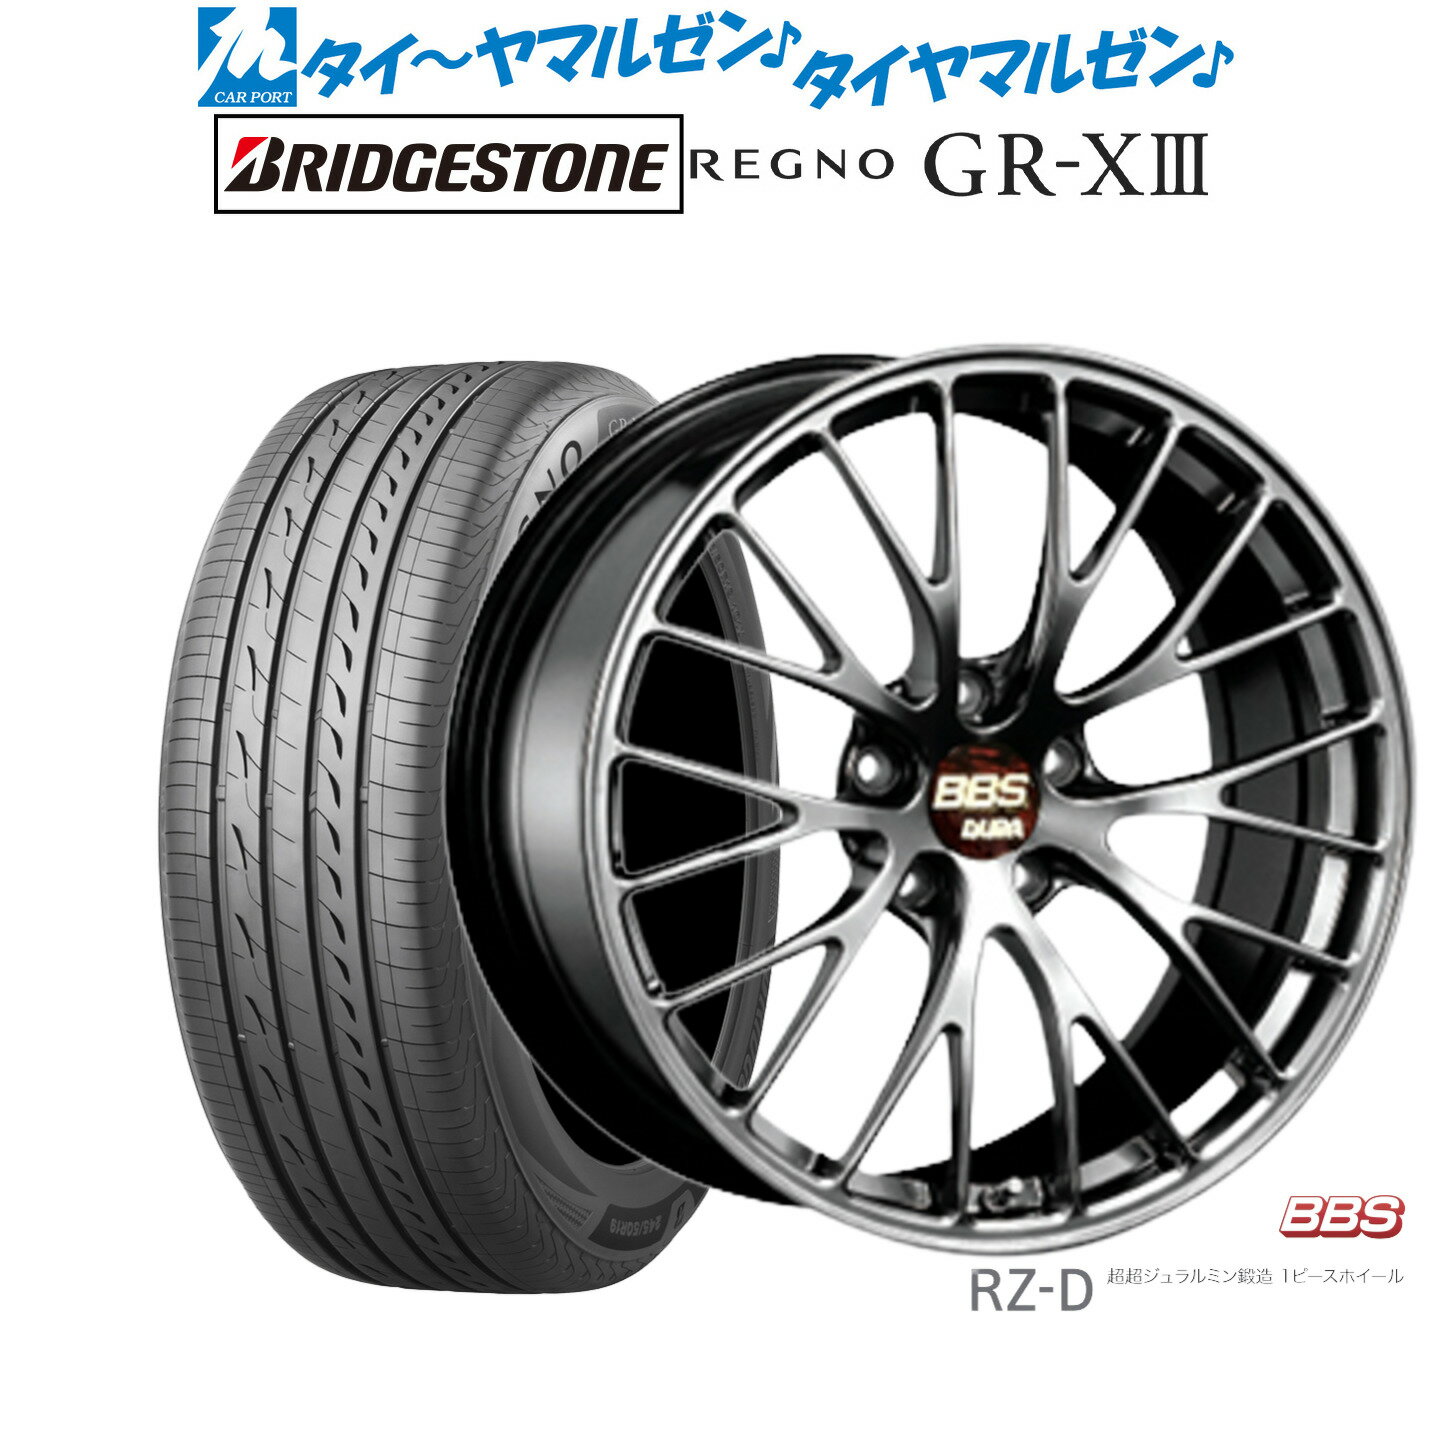 [5/9～15]割引クーポン配布新品 サマータイヤ ホイール4本セットBBS JAPAN RZ-D19インチ 8.5Jブリヂストン REGNO レグノ GR-XIII(GR-X3)225/40R19